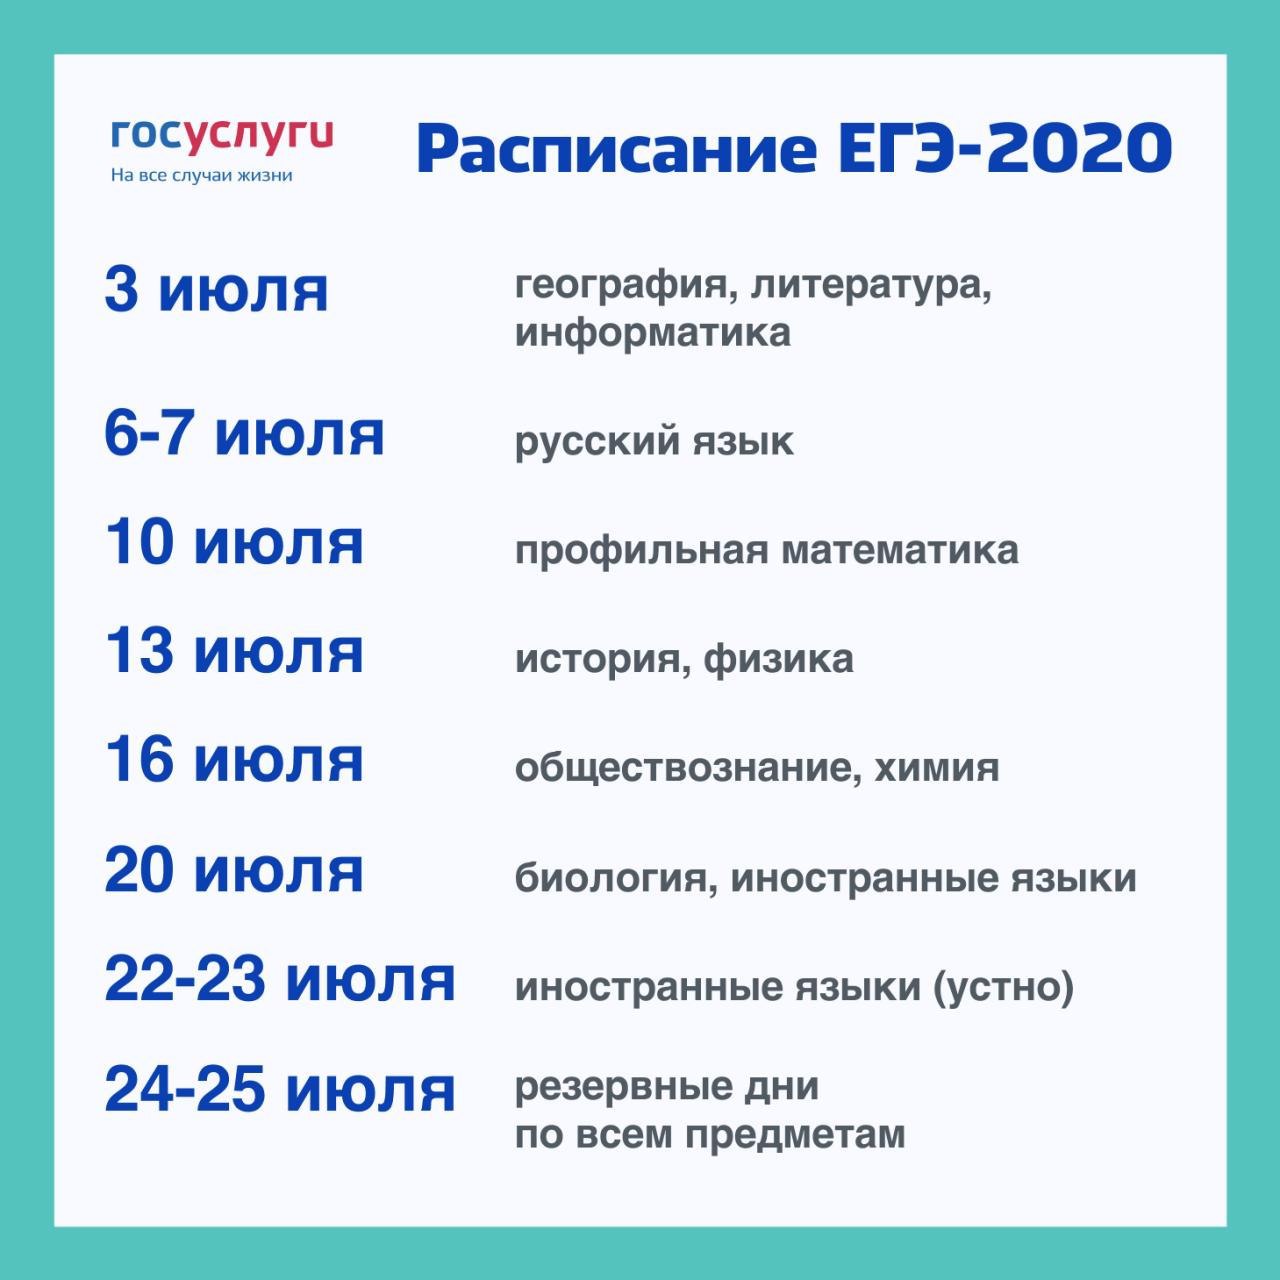 Raspisanie EGE 2020